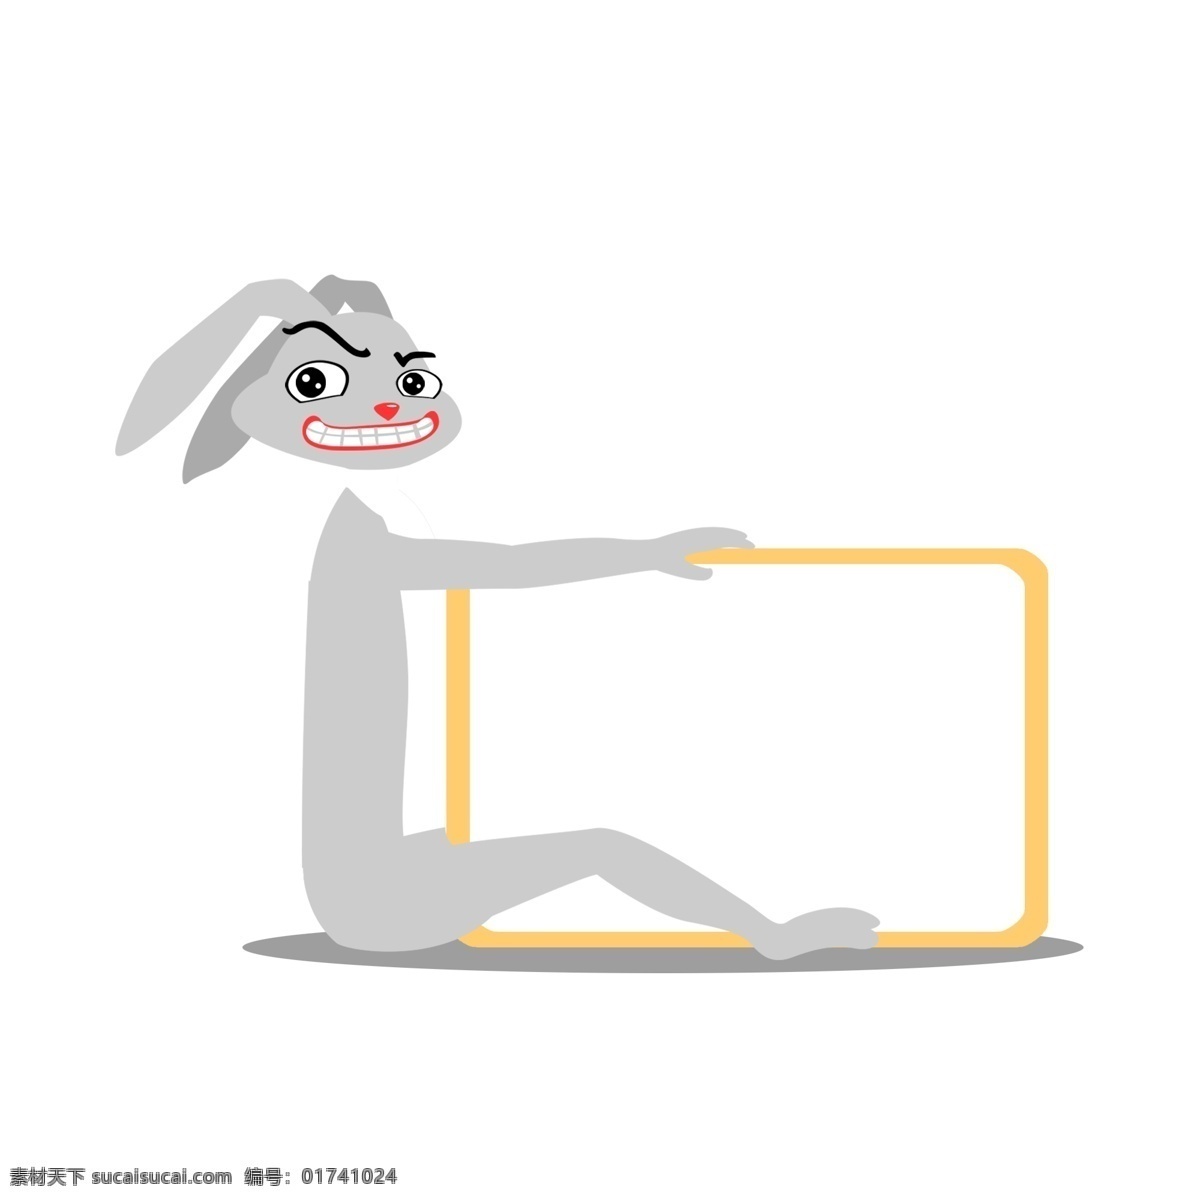 手绘 兔子 萝卜 装饰 边框 卡通 小 动物 可爱边框 手绘边框 标签边框 装饰边框